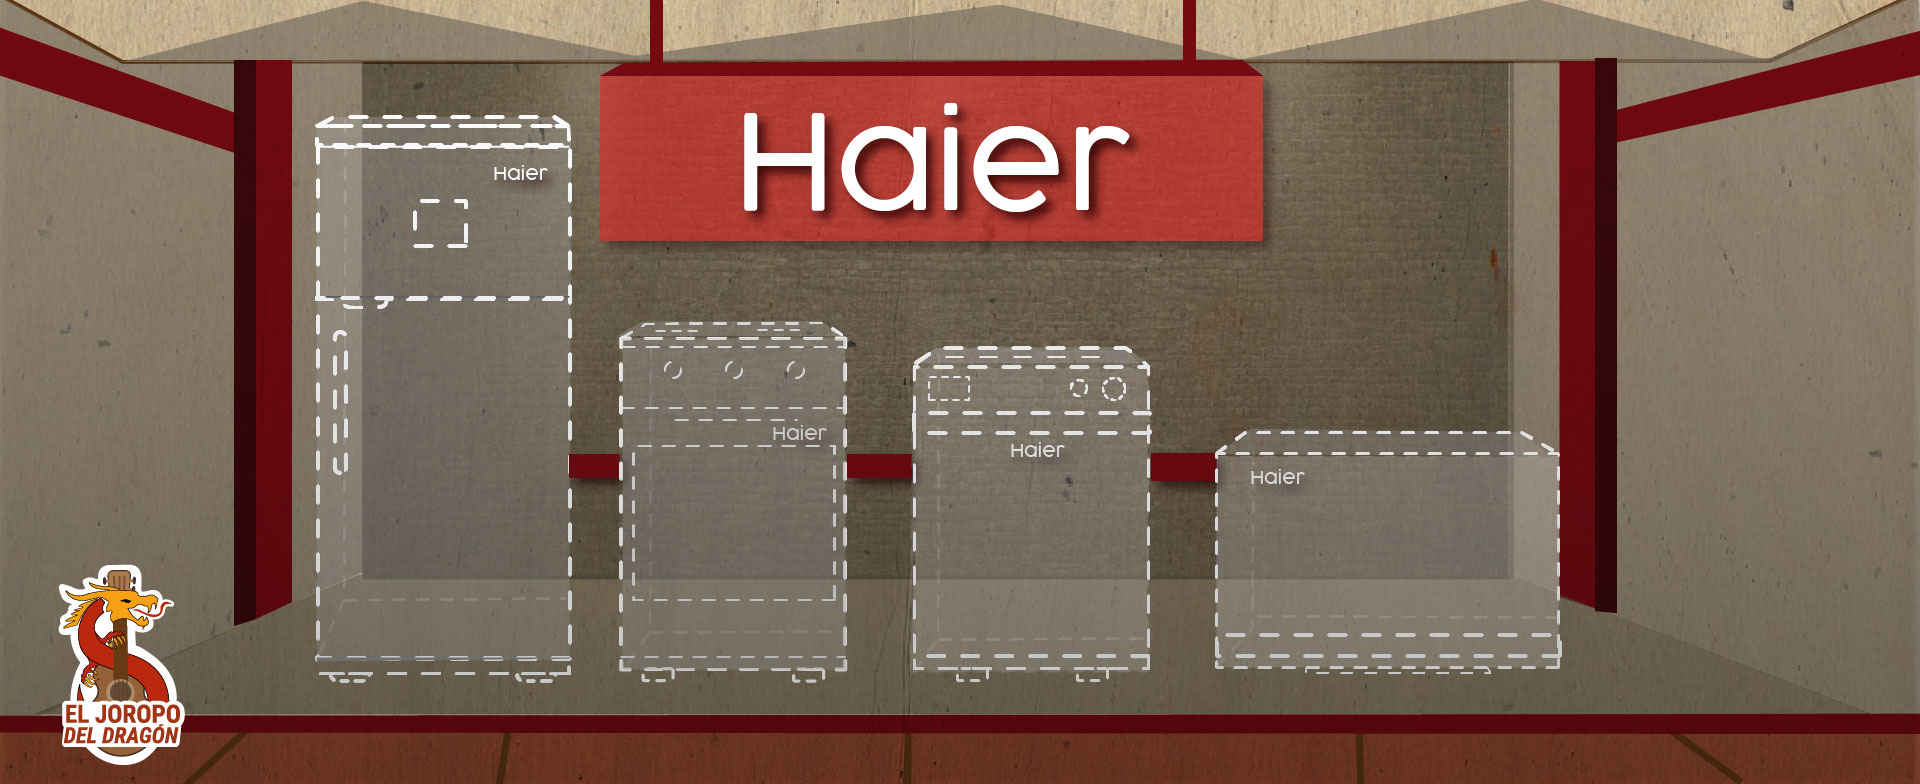 ilustração dos eletrodomésticos Haier